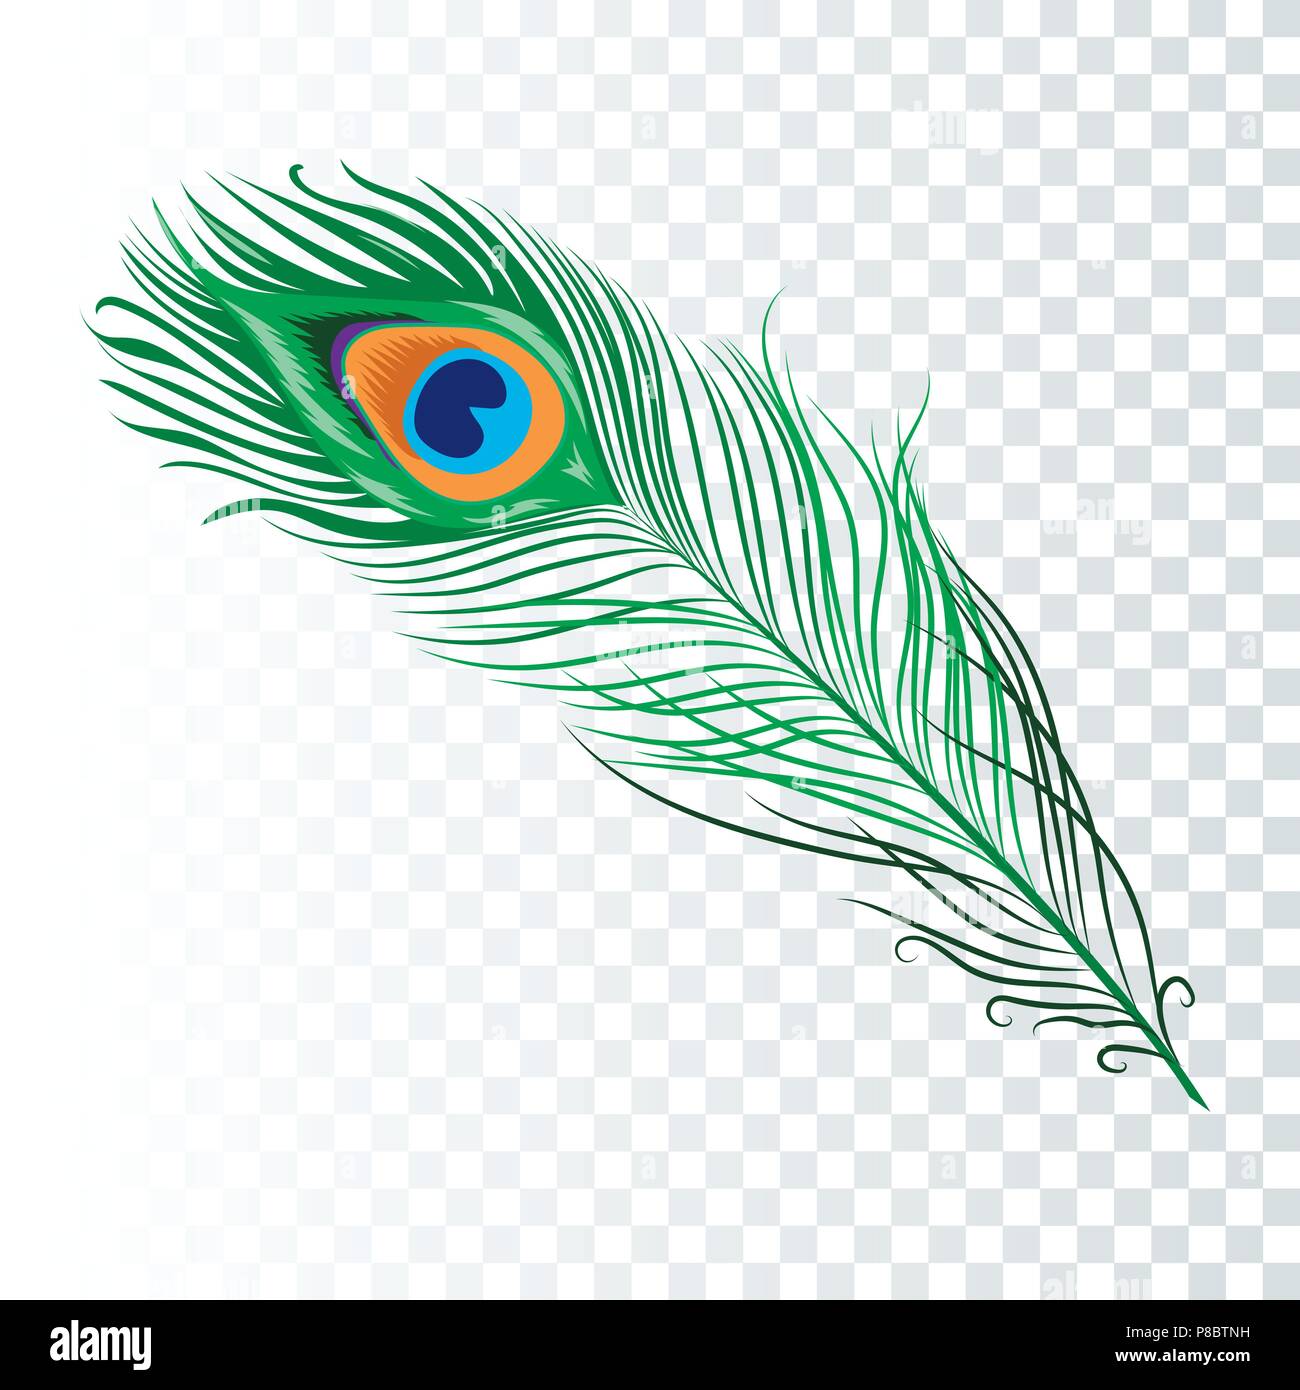 Colección moderna de plumas de pavo real dibujadas a mano